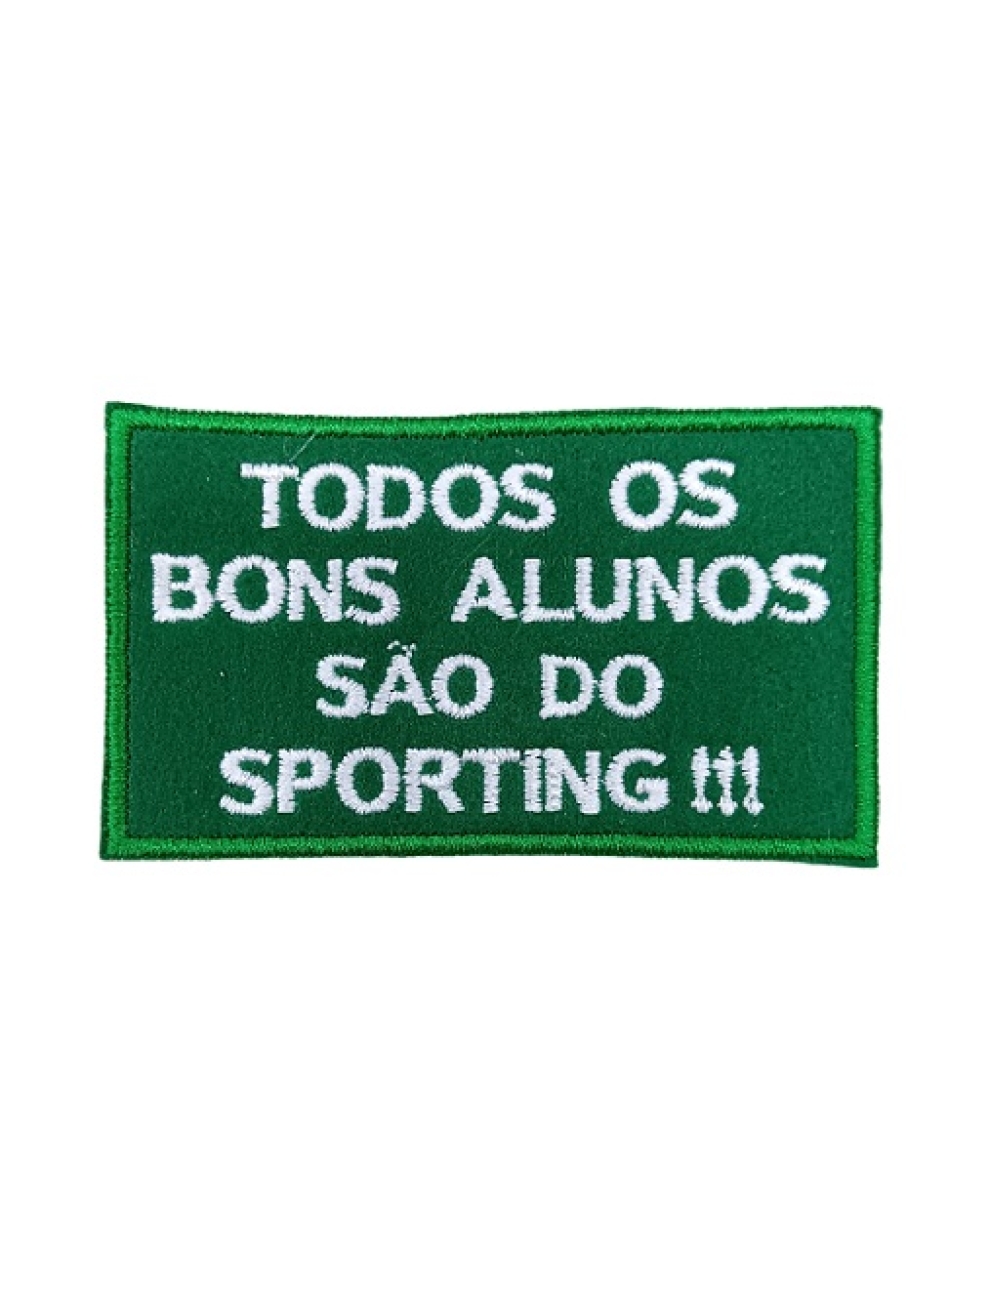 Todos os bons alunos são do Sporting!!!